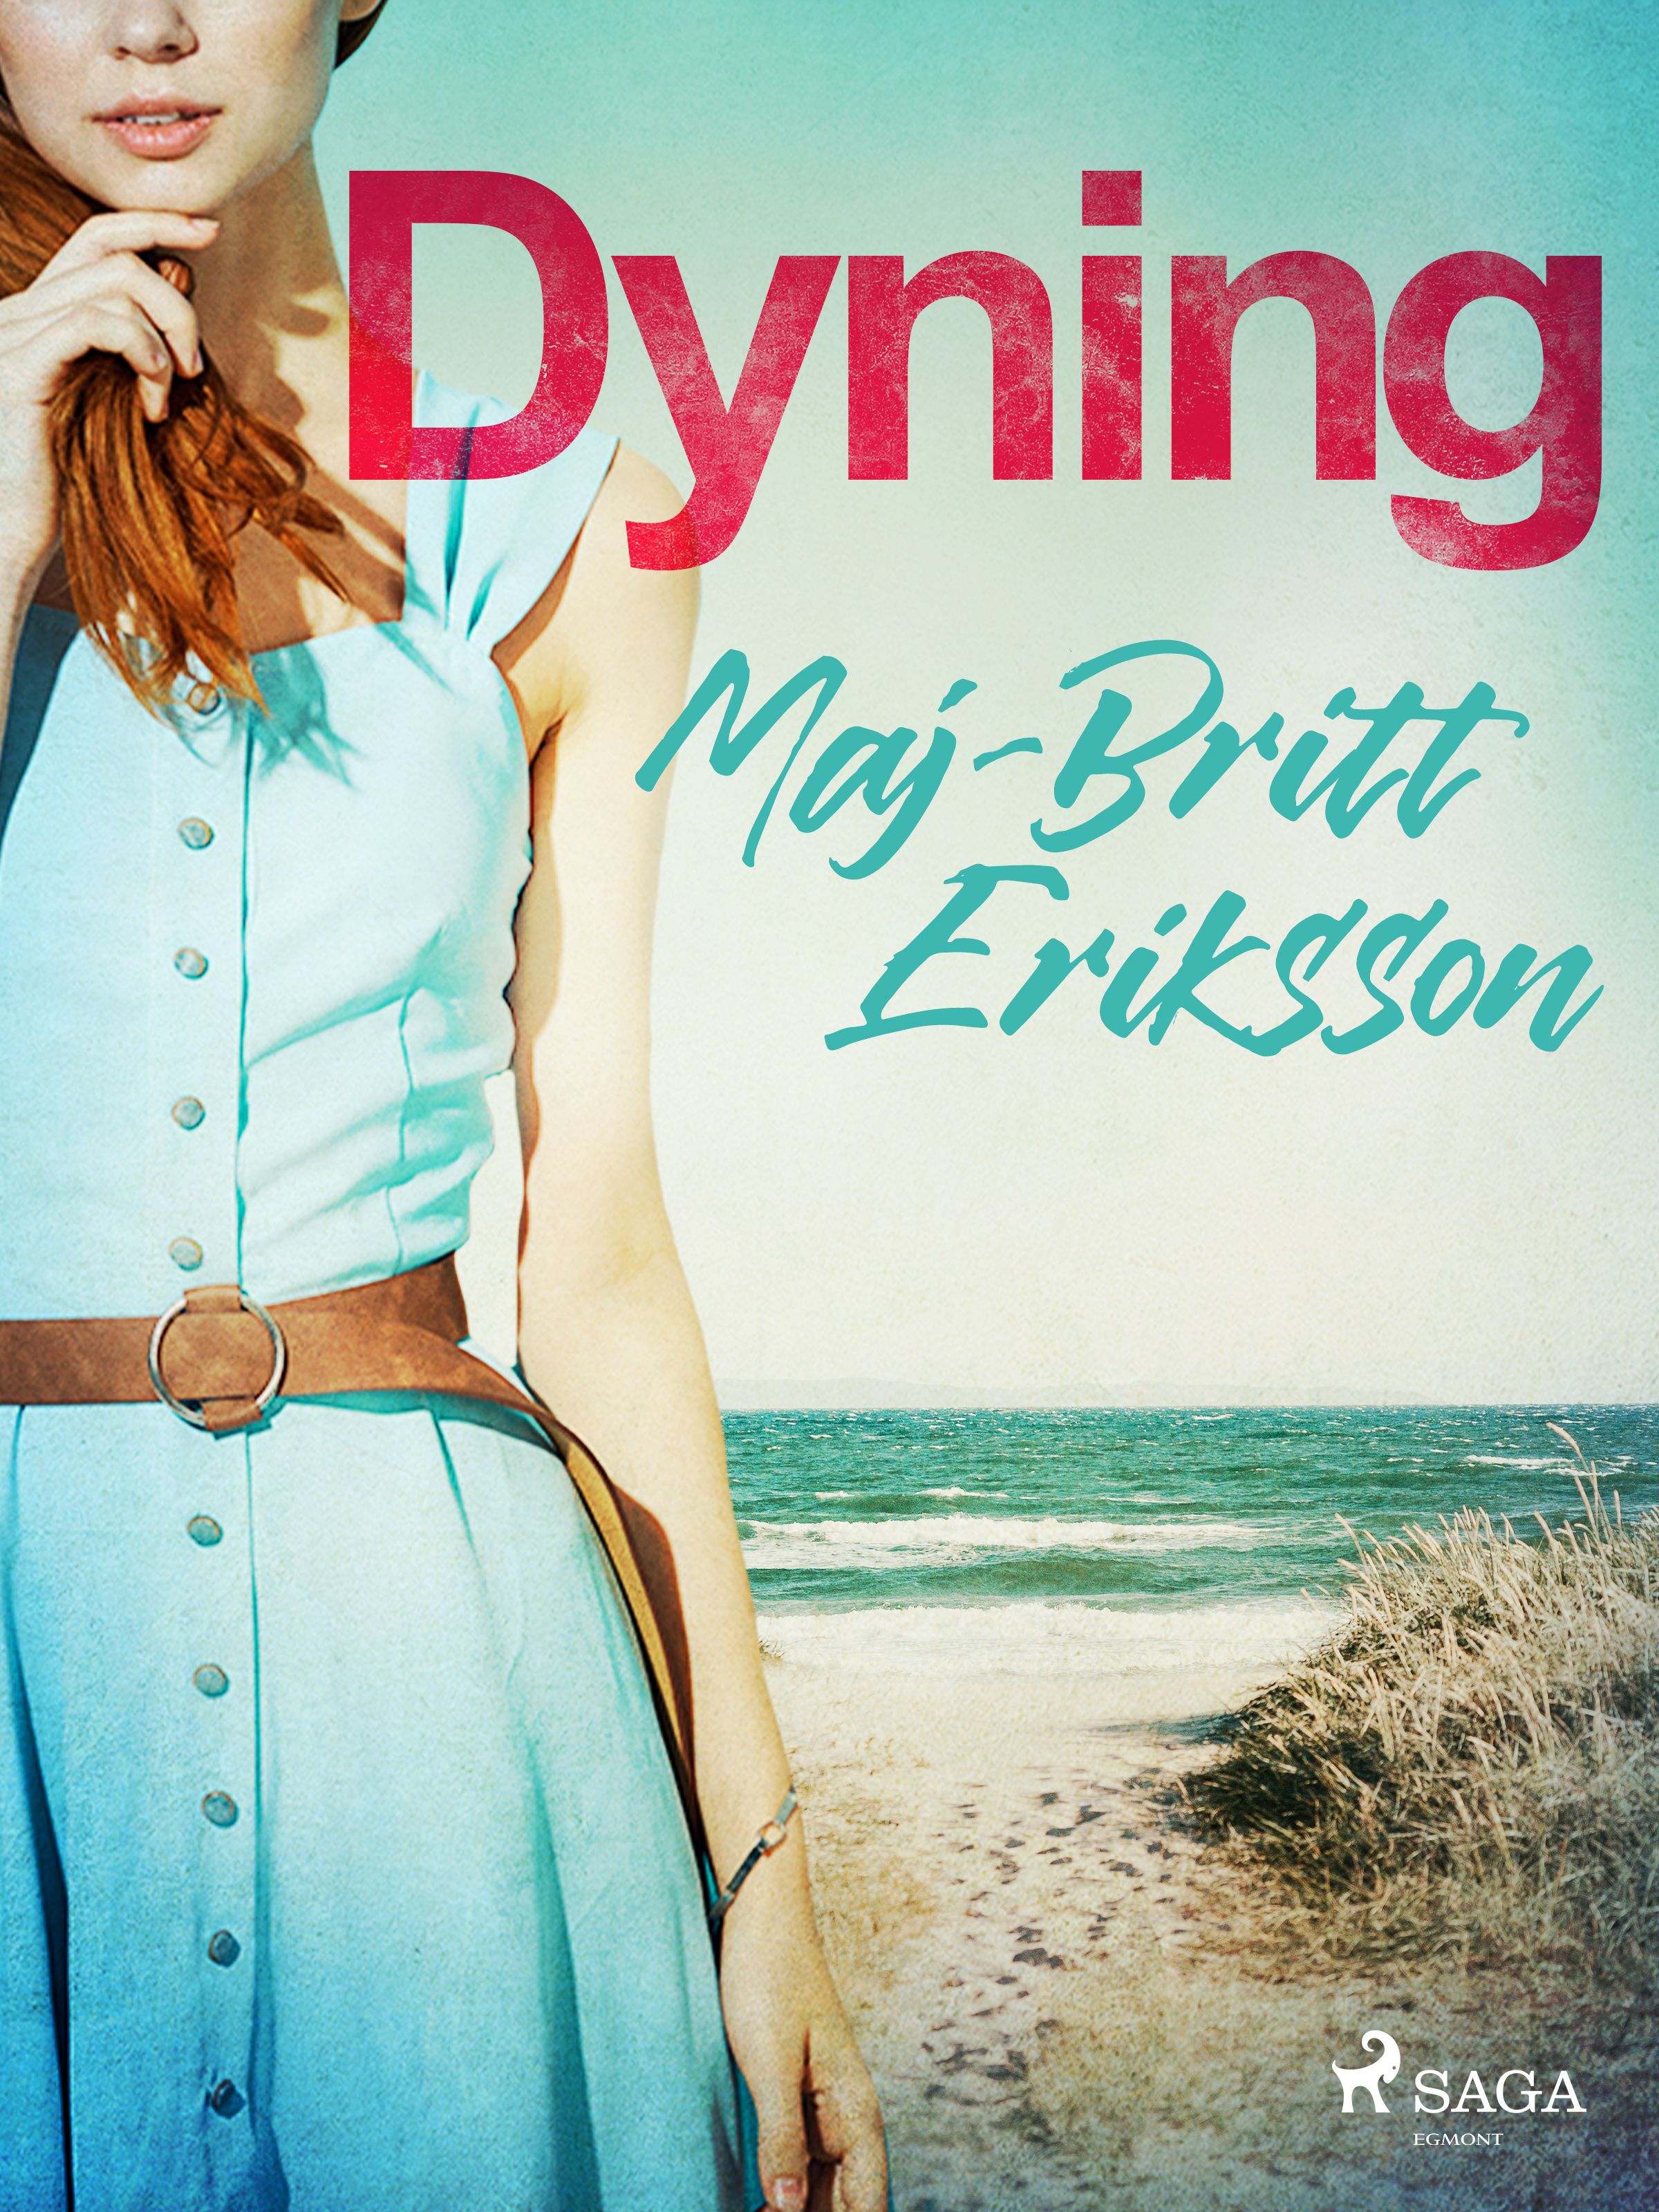 Dyning, e-bog af Maj-Britt Eriksson